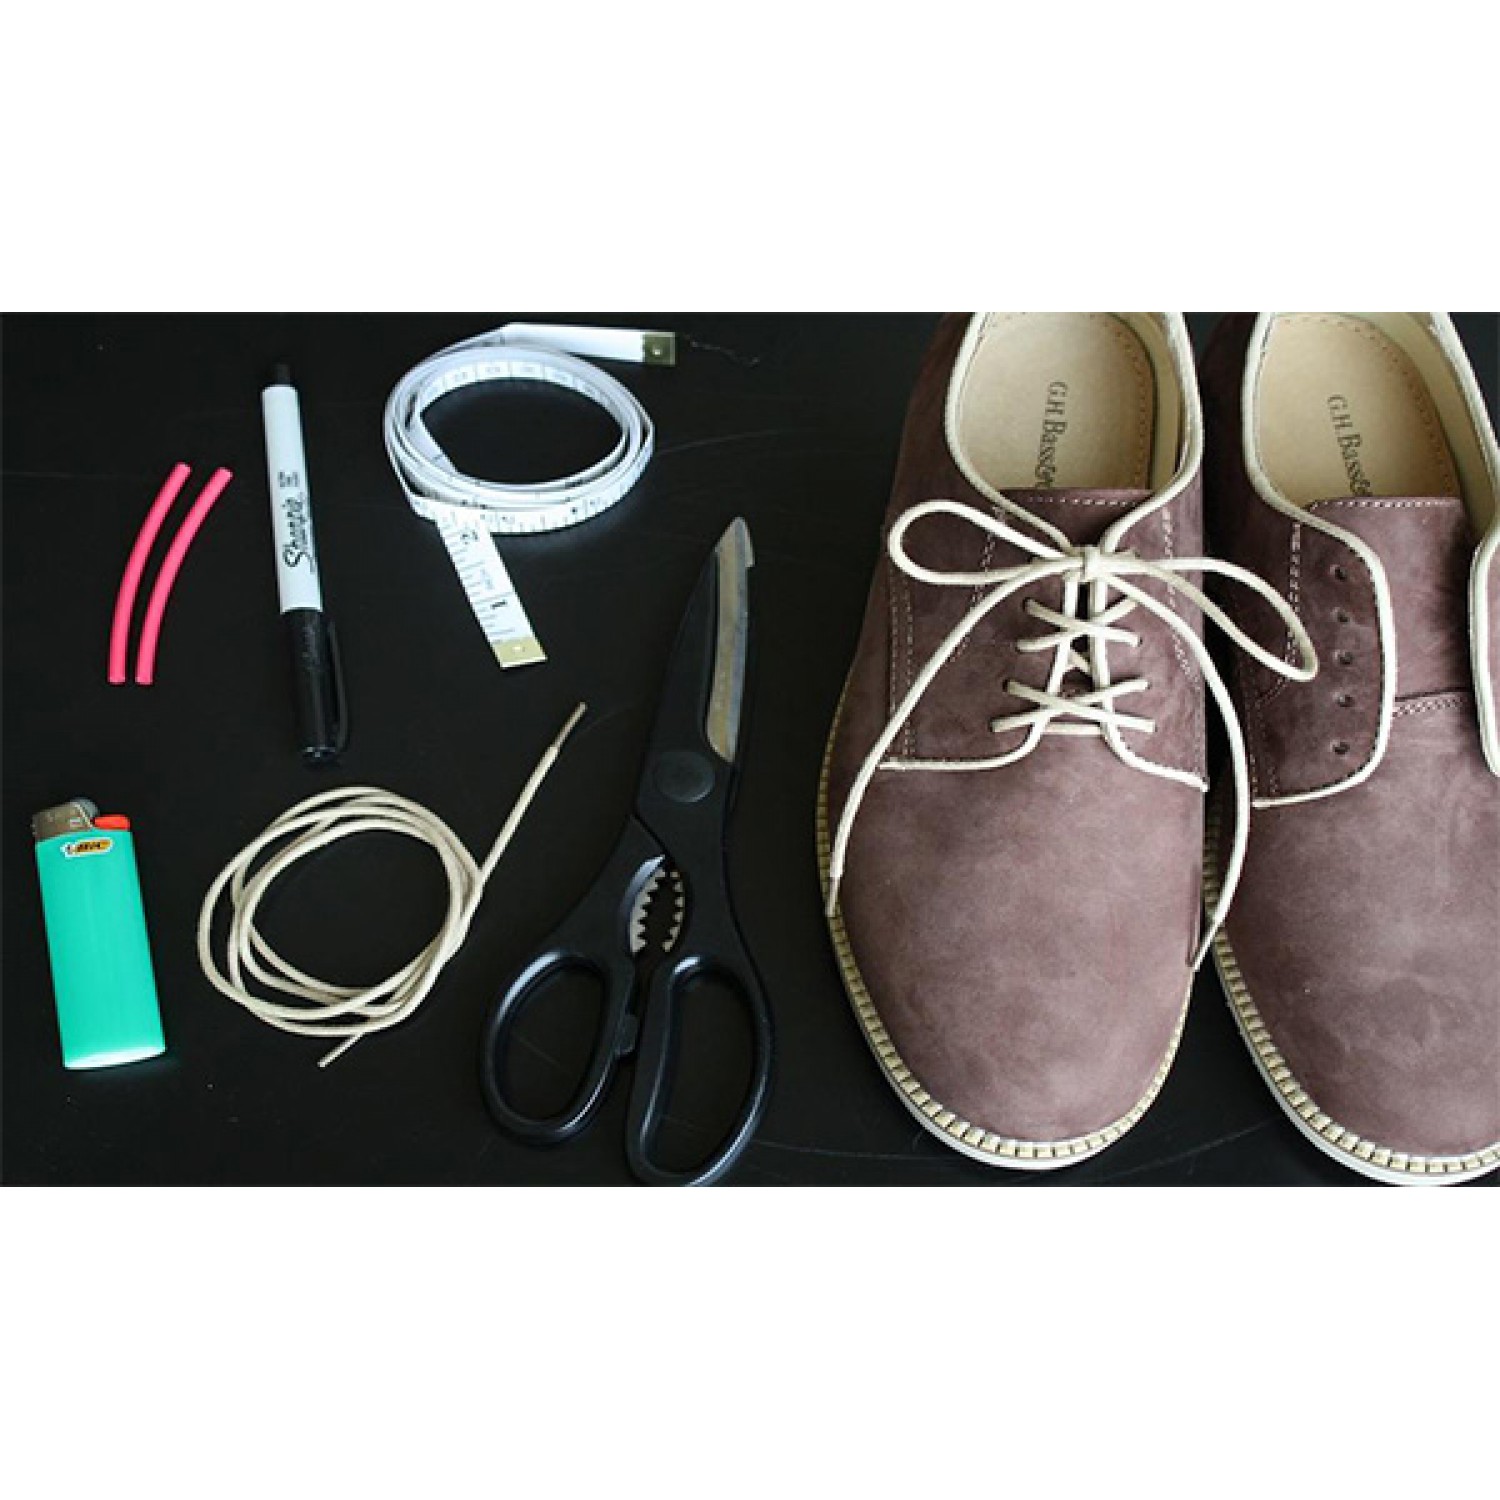  Прекалено дълги връзки за обувки - как да ги скъсим                      